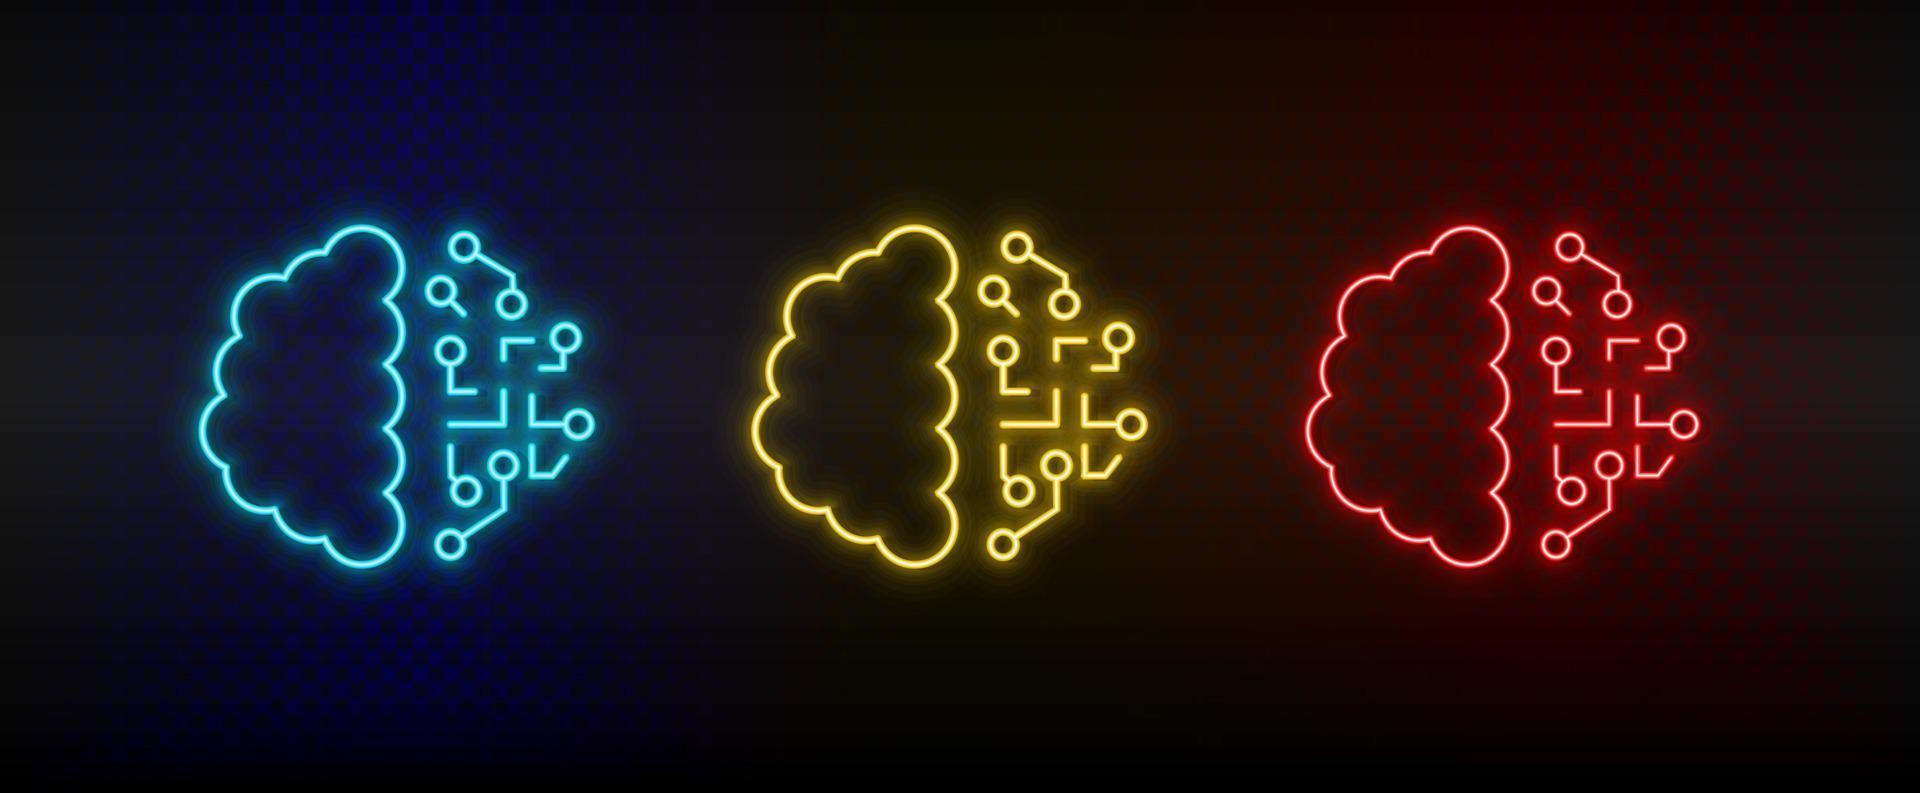 Neon-Symbole. Gehirnintelligenz. Satz von roten, blauen, gelben Neonvektorsymbolen auf dunklem Hintergrund vektor